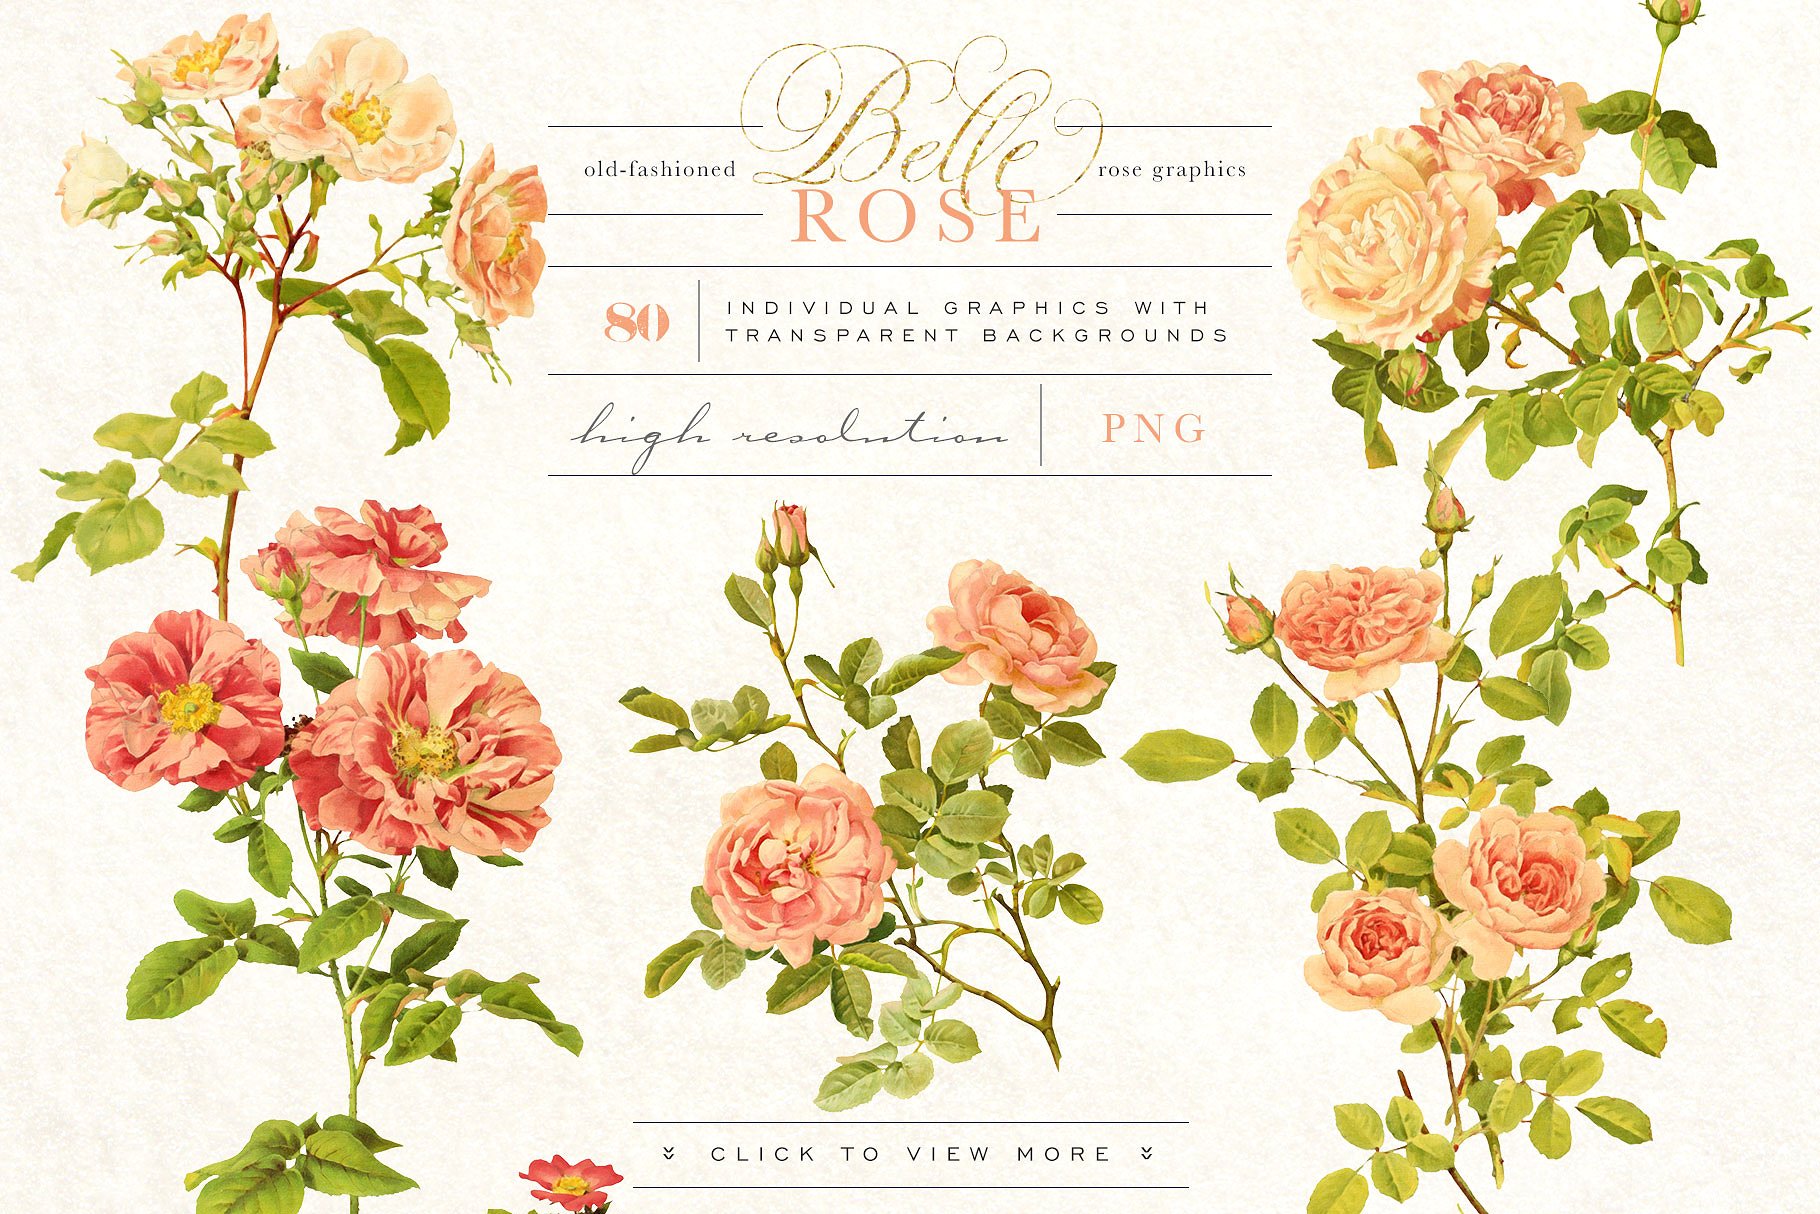 旧时尚老派水彩玫瑰花卉剪贴画合集 Belle Rose Antique Graphics Bundle插图(1)